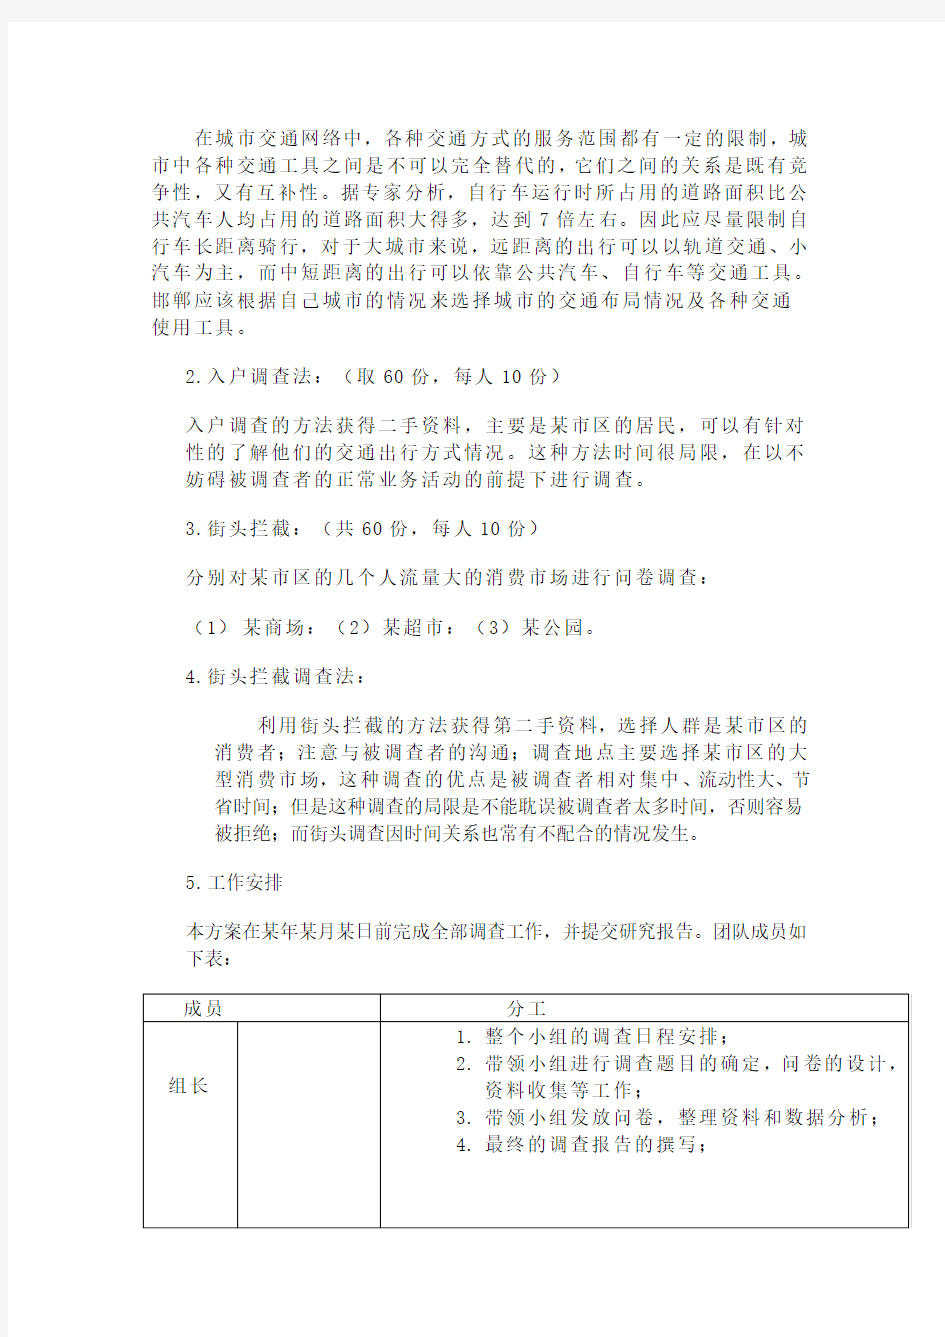 邯郸市民交通出行方式市场调查方案(1)